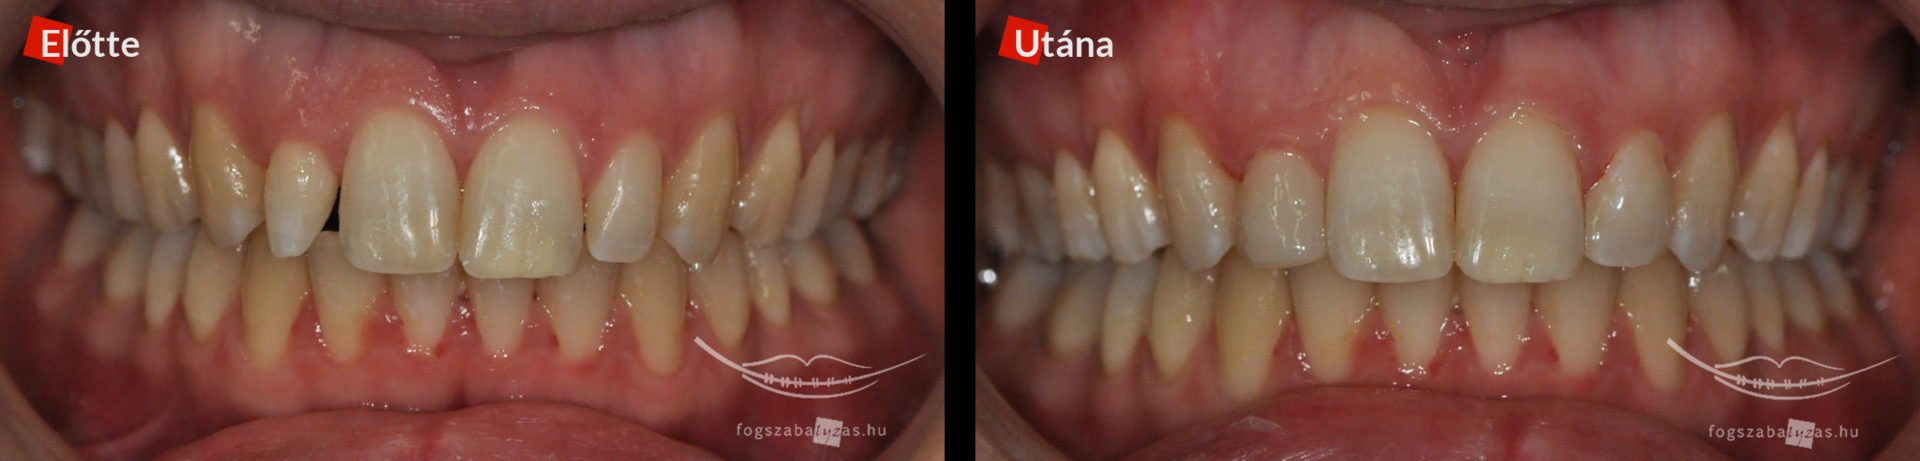 Aszimetrikus kismetsző fogak ellátása 24 éves nő páciens a jobb felső kettes, illetve a bal felső kettes foga kompozit tömőanyaggal lett kiegészítve.